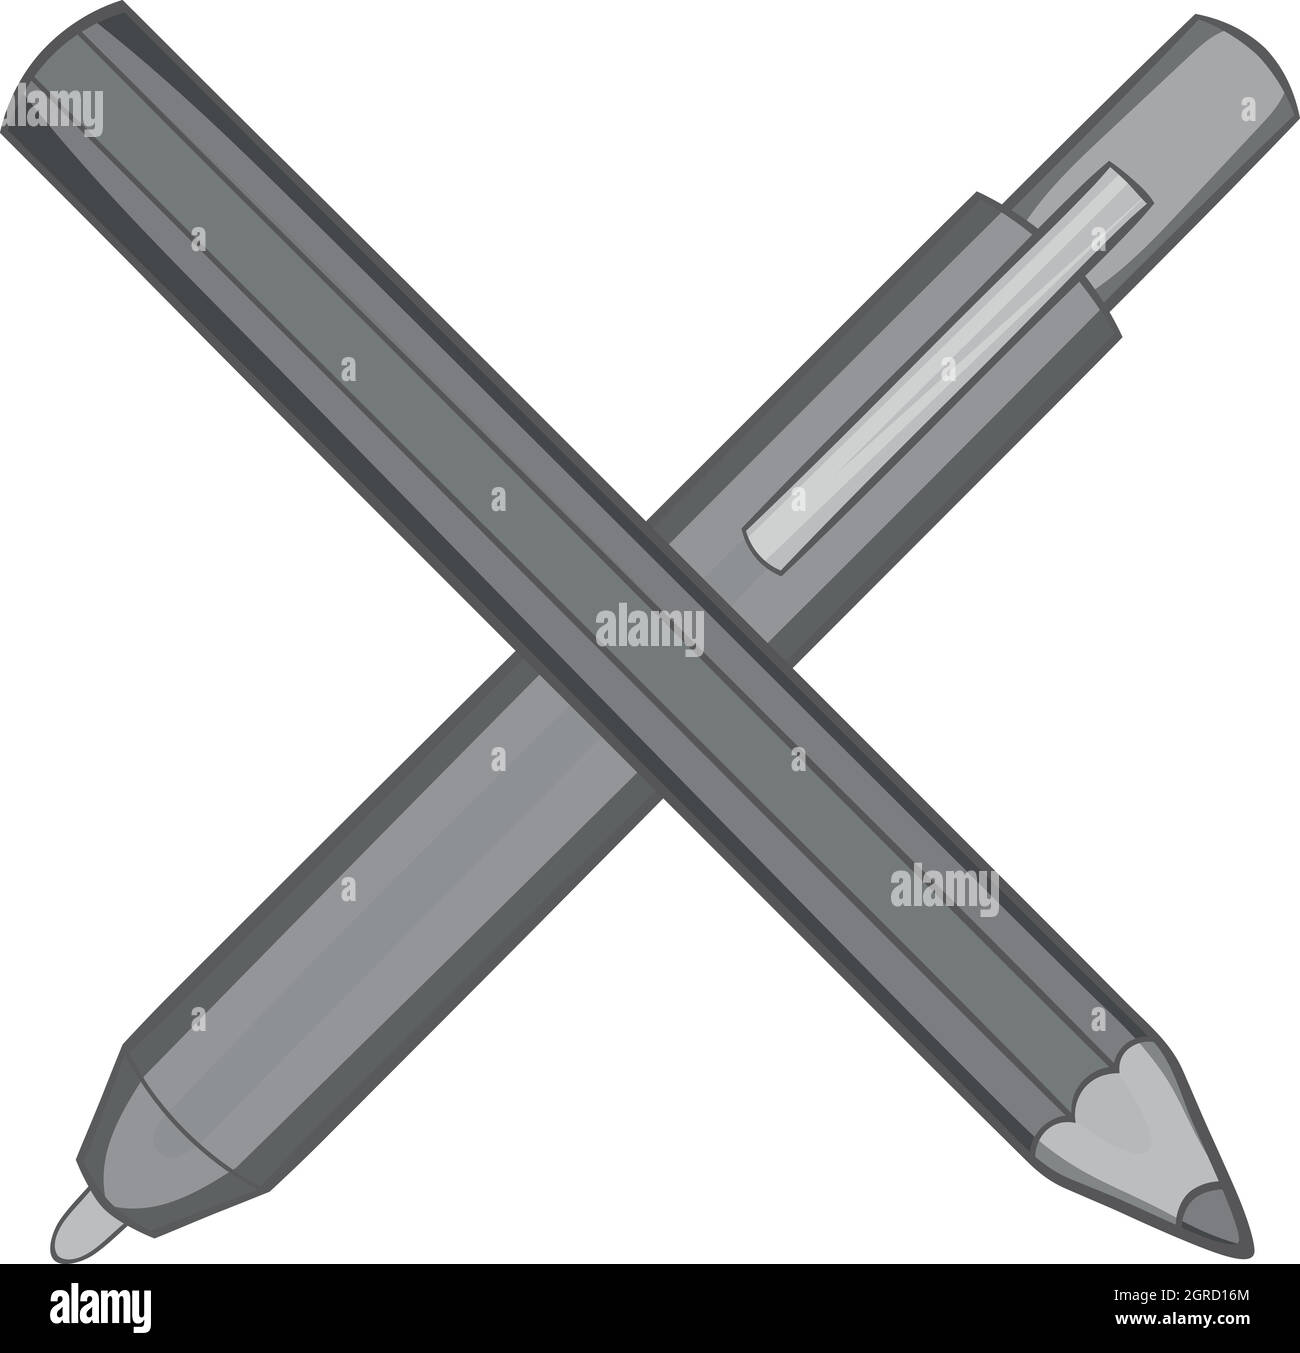 Pencil and pen icon, black monochrome style Stock Vector